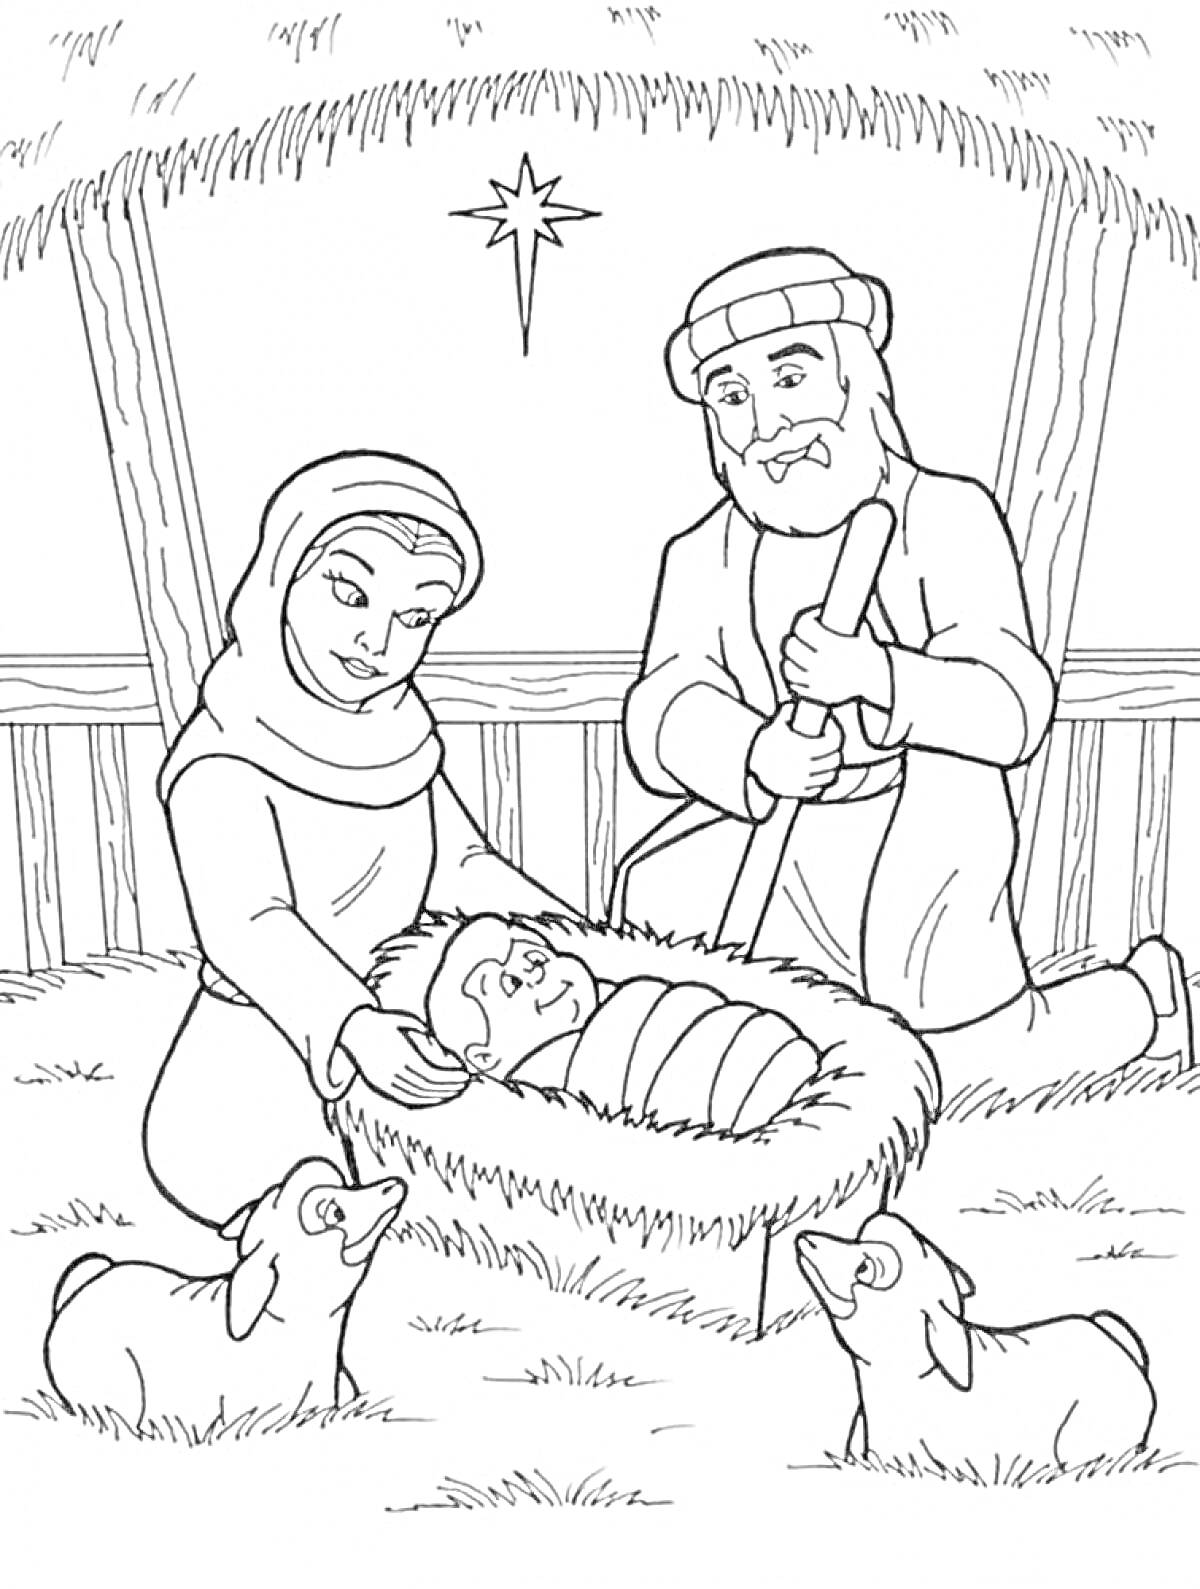 Раскраска Рождество Христово с изображением Марии, Иосифа, младенца Иисуса в яслях и двумя овечками